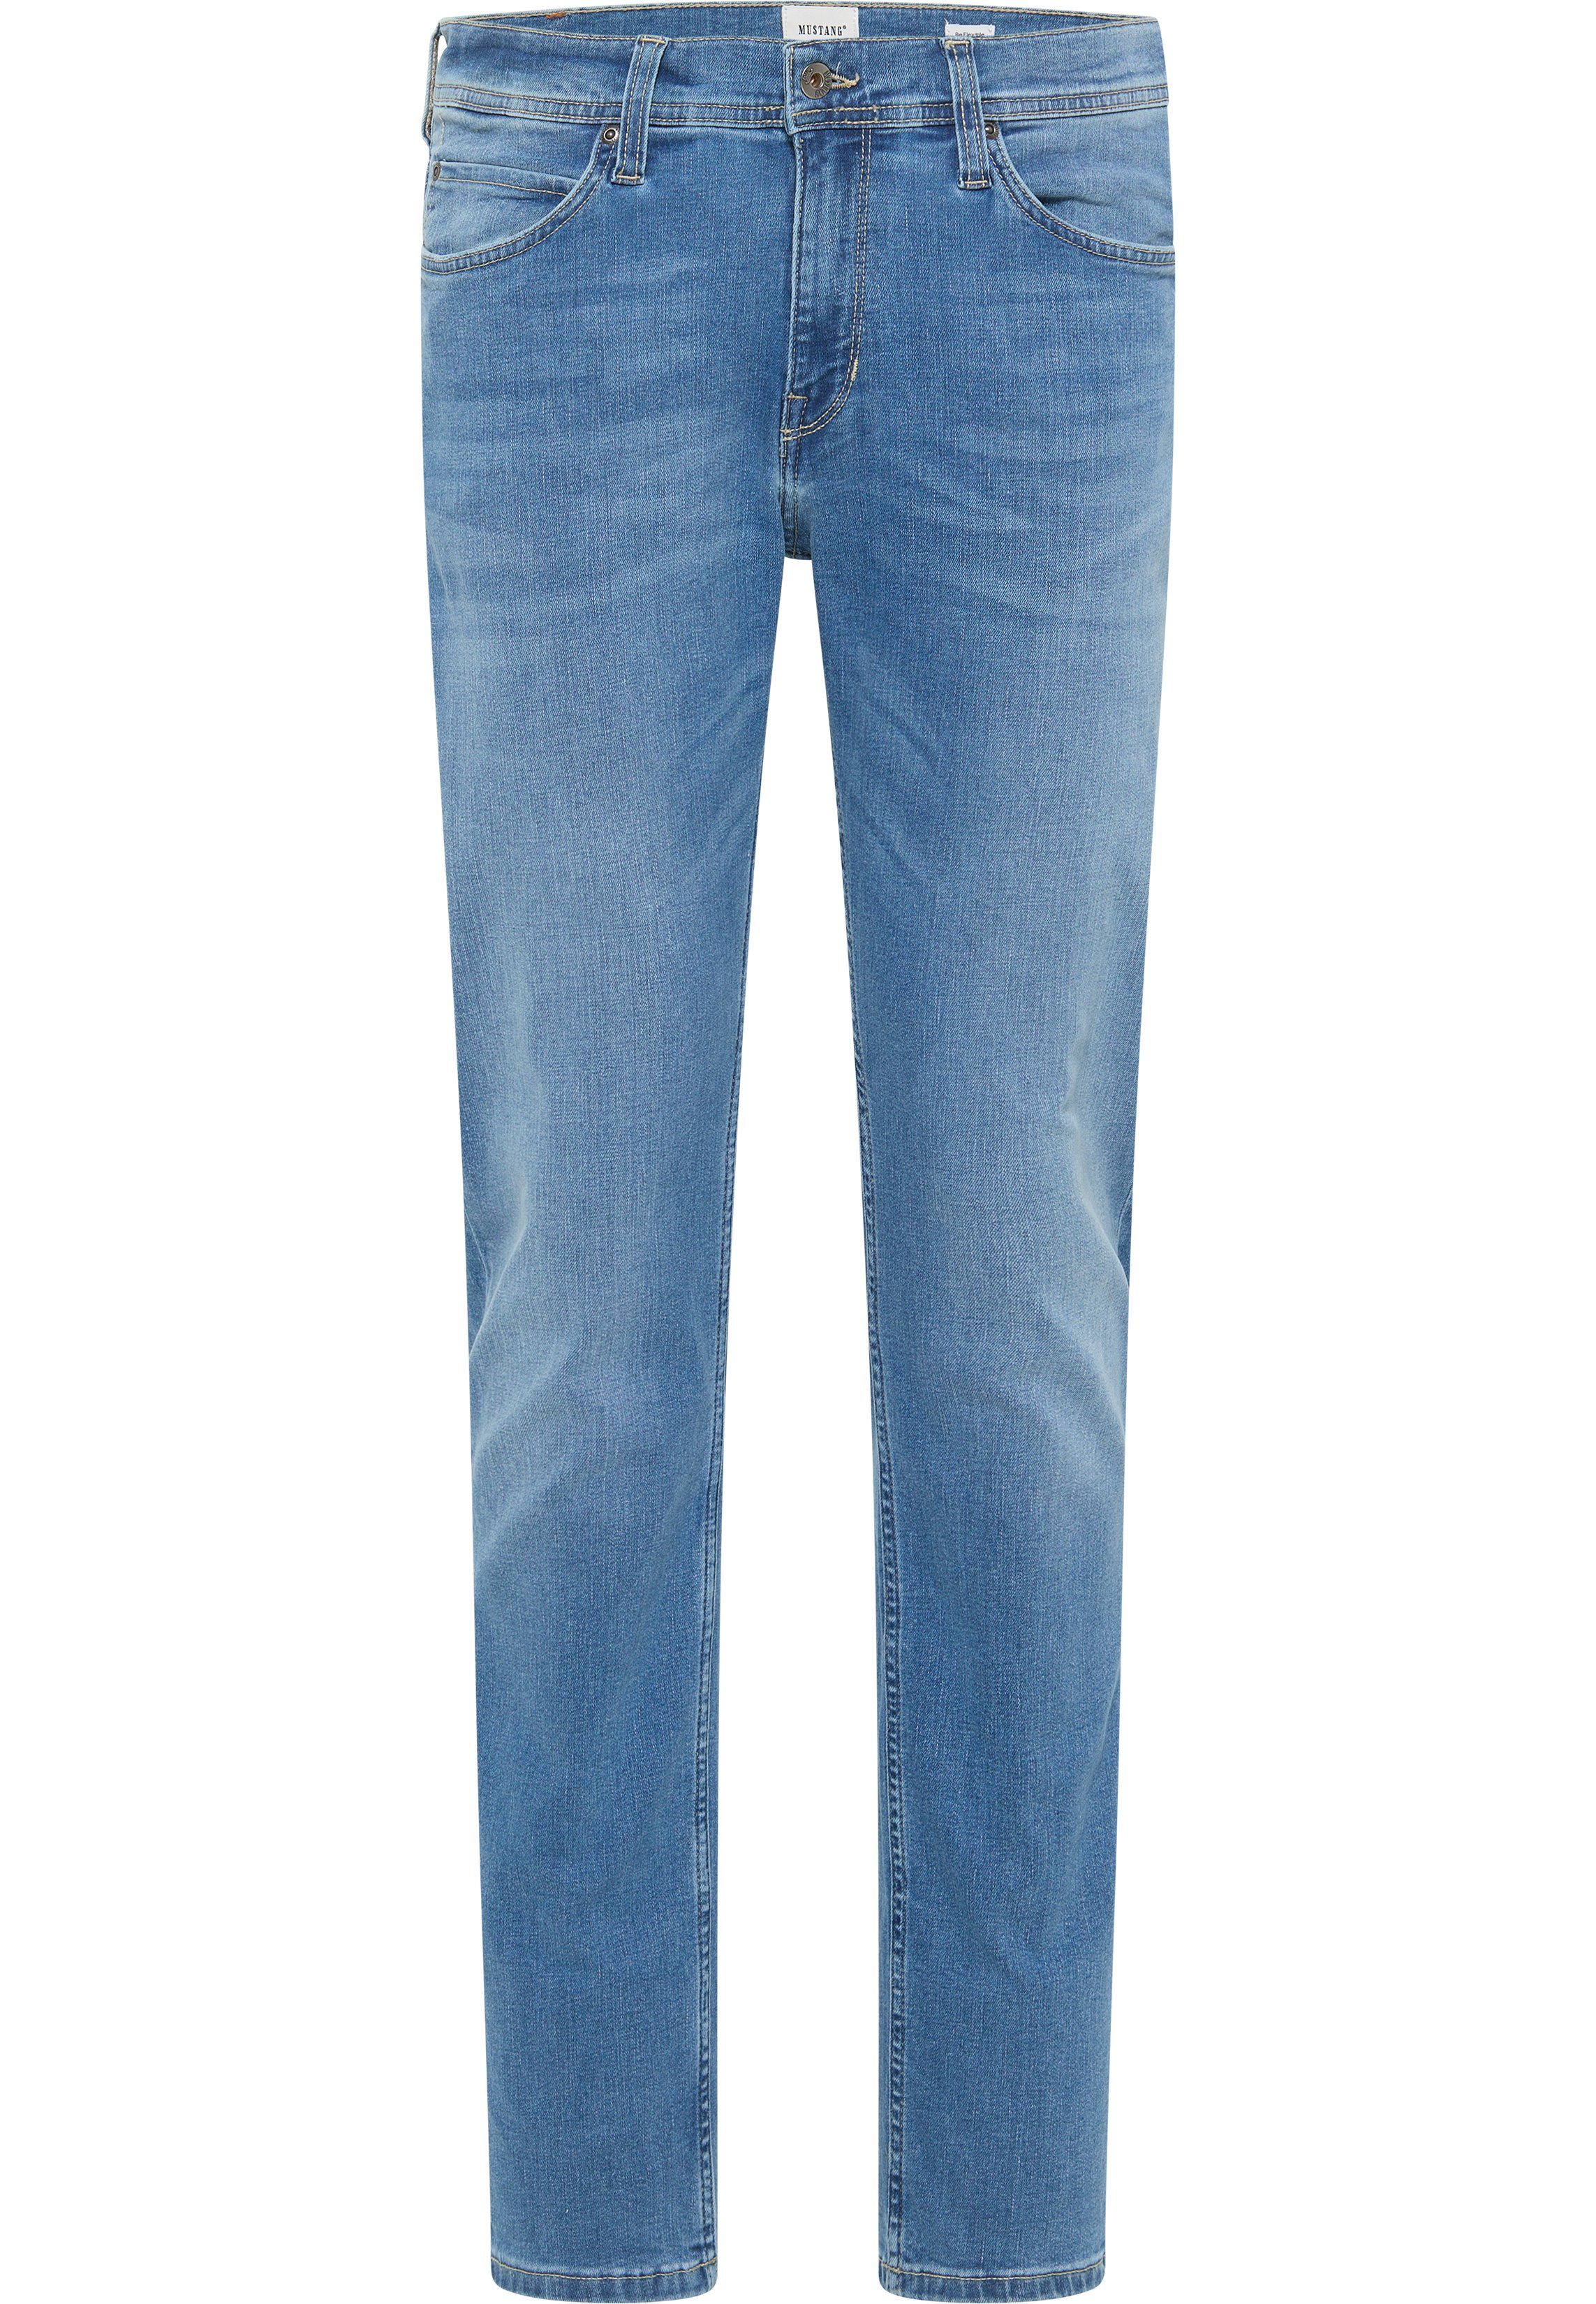 MUSTANG Slim-fit-Jeans Style Vegas blau-5000632